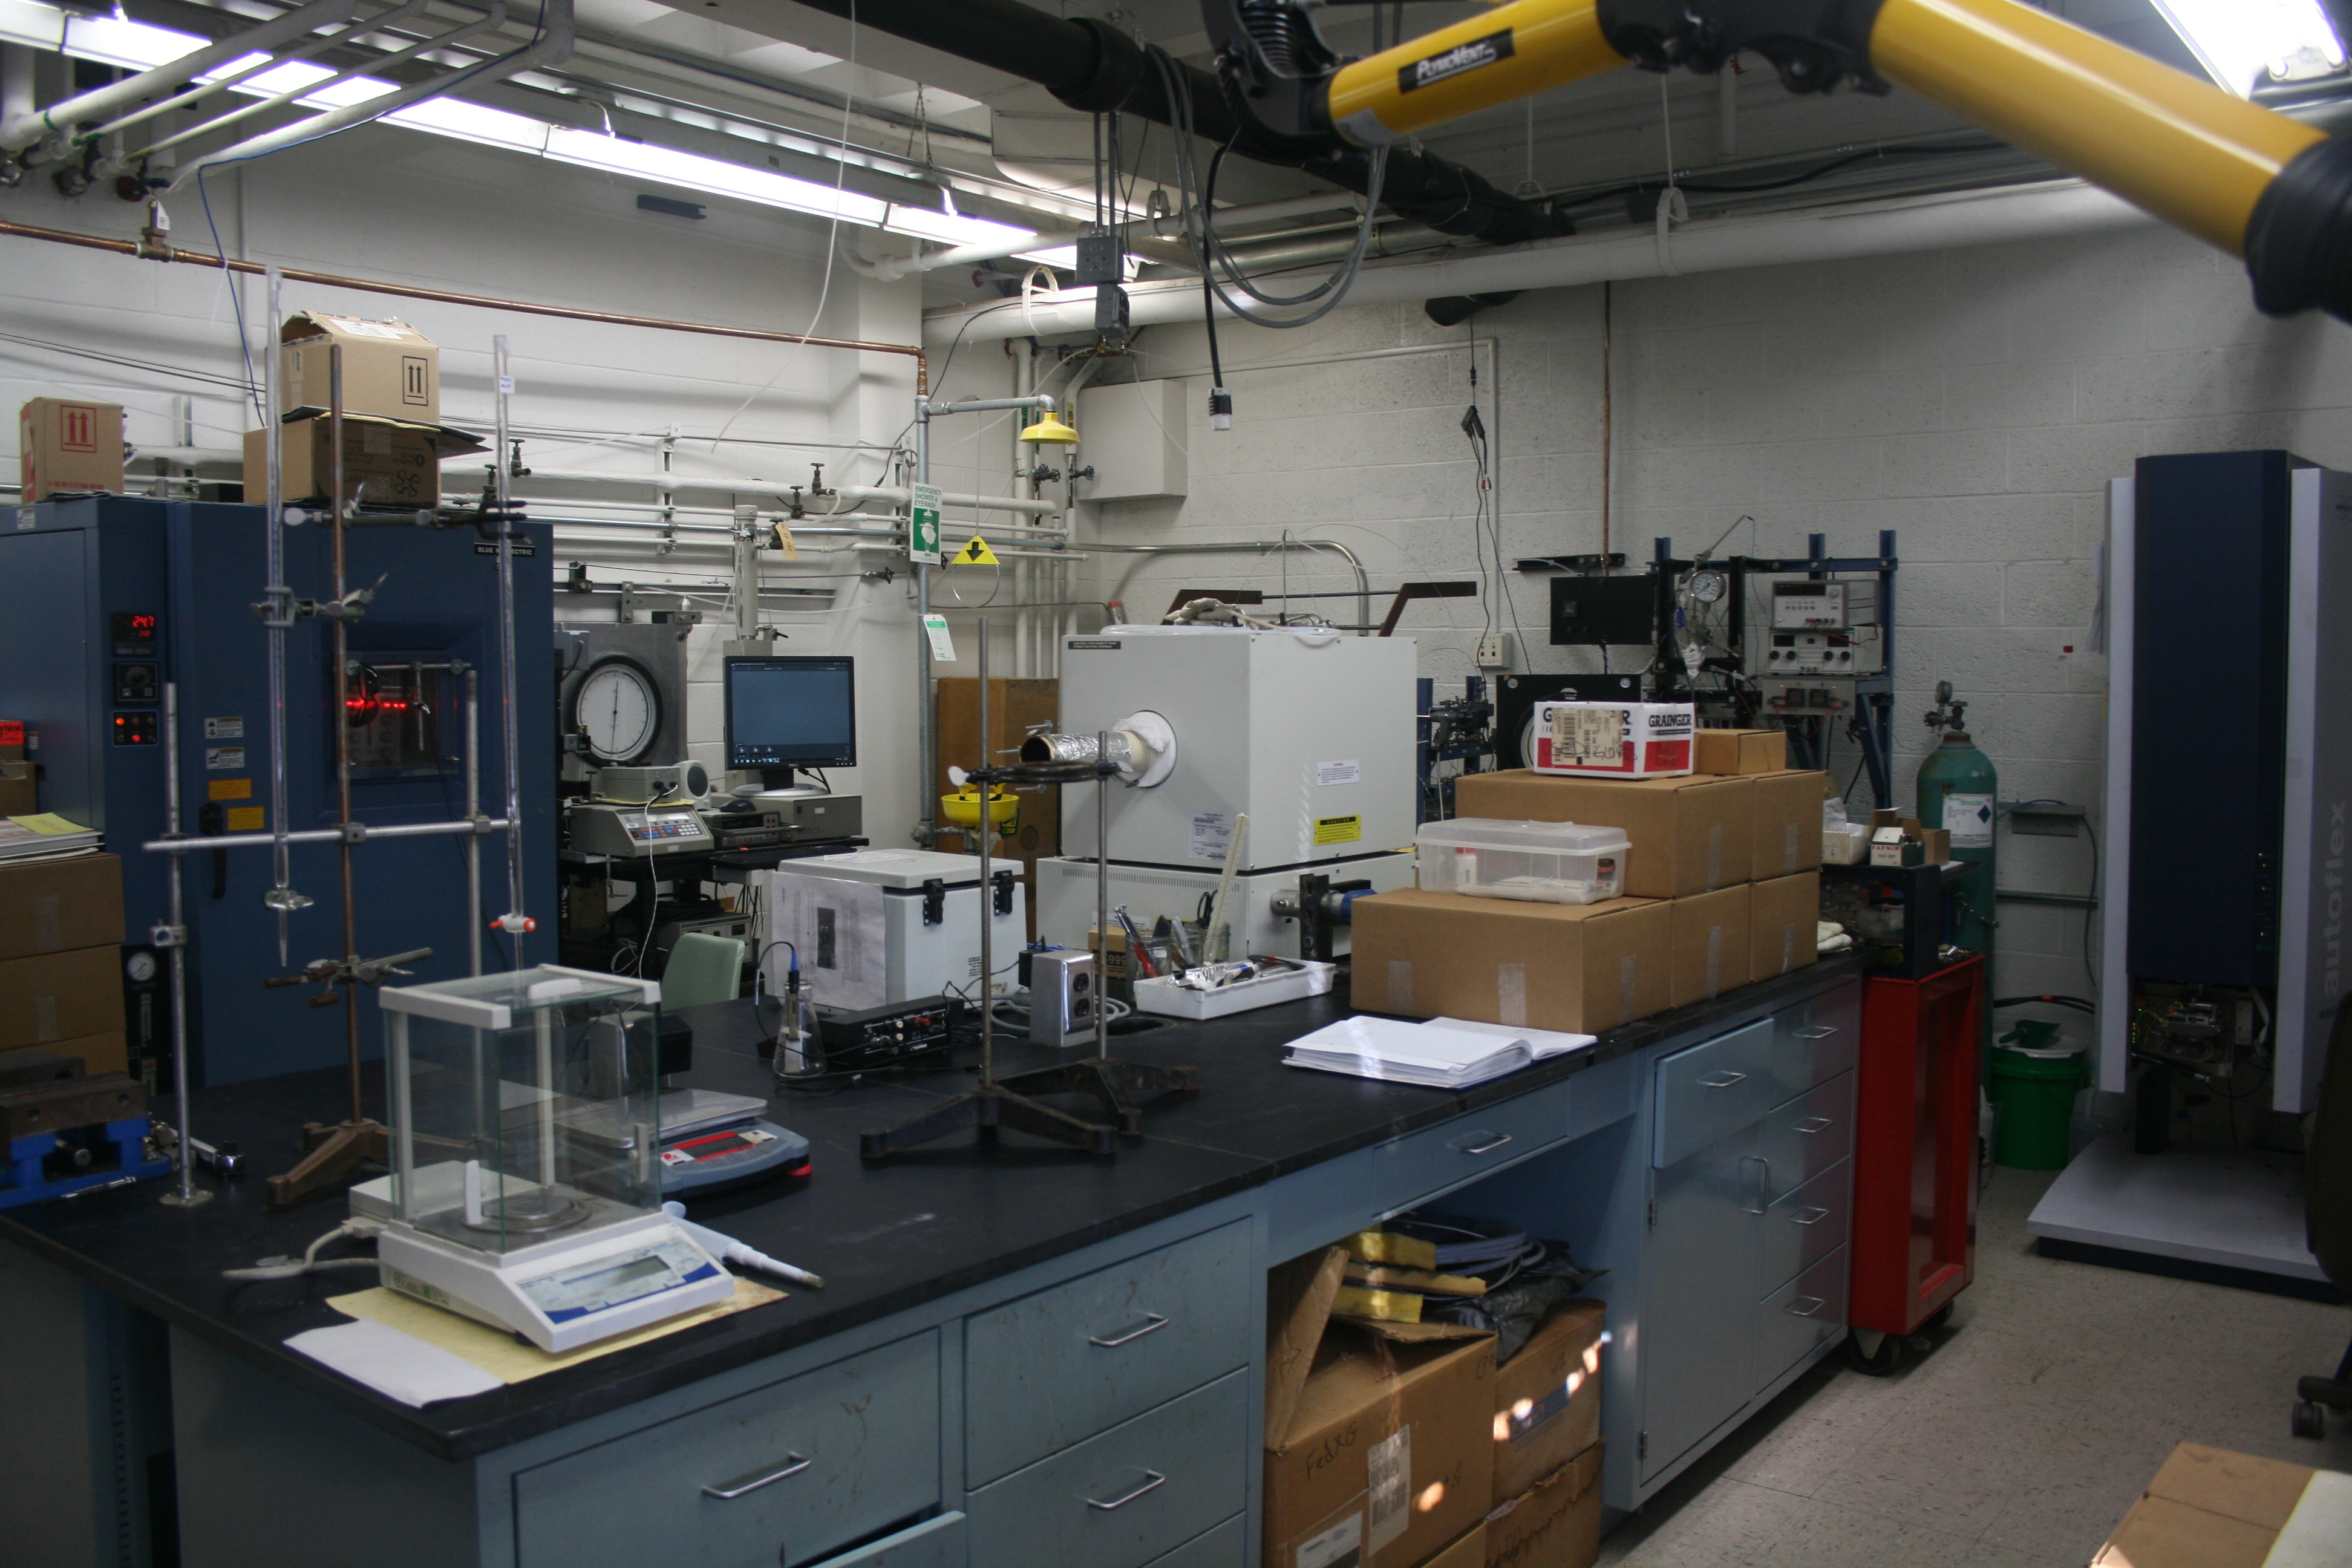 Inside Thies lab